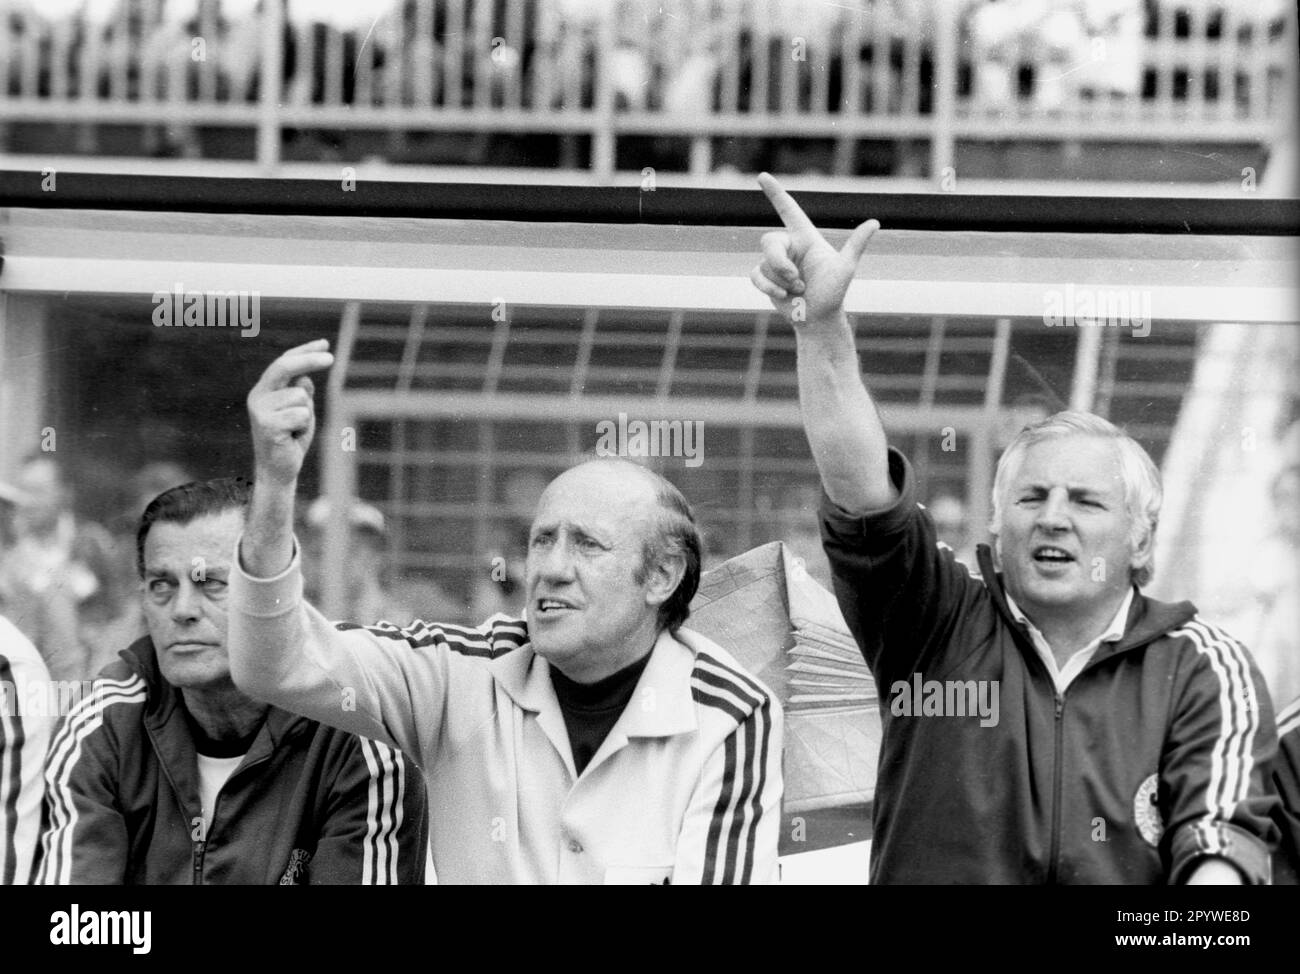 Coupe du monde de football 1974 / final Round Group B / FRG - Yougoslavie 2:0 / 26.06.1974 à Düsseldorf / le banc allemand avec l'entraîneur national Helmut Schön (au centre) et co-entraîneur Jupp Derwall (à droite), indiquer les deux dernières minutes de jeu. [traduction automatique] Banque D'Images